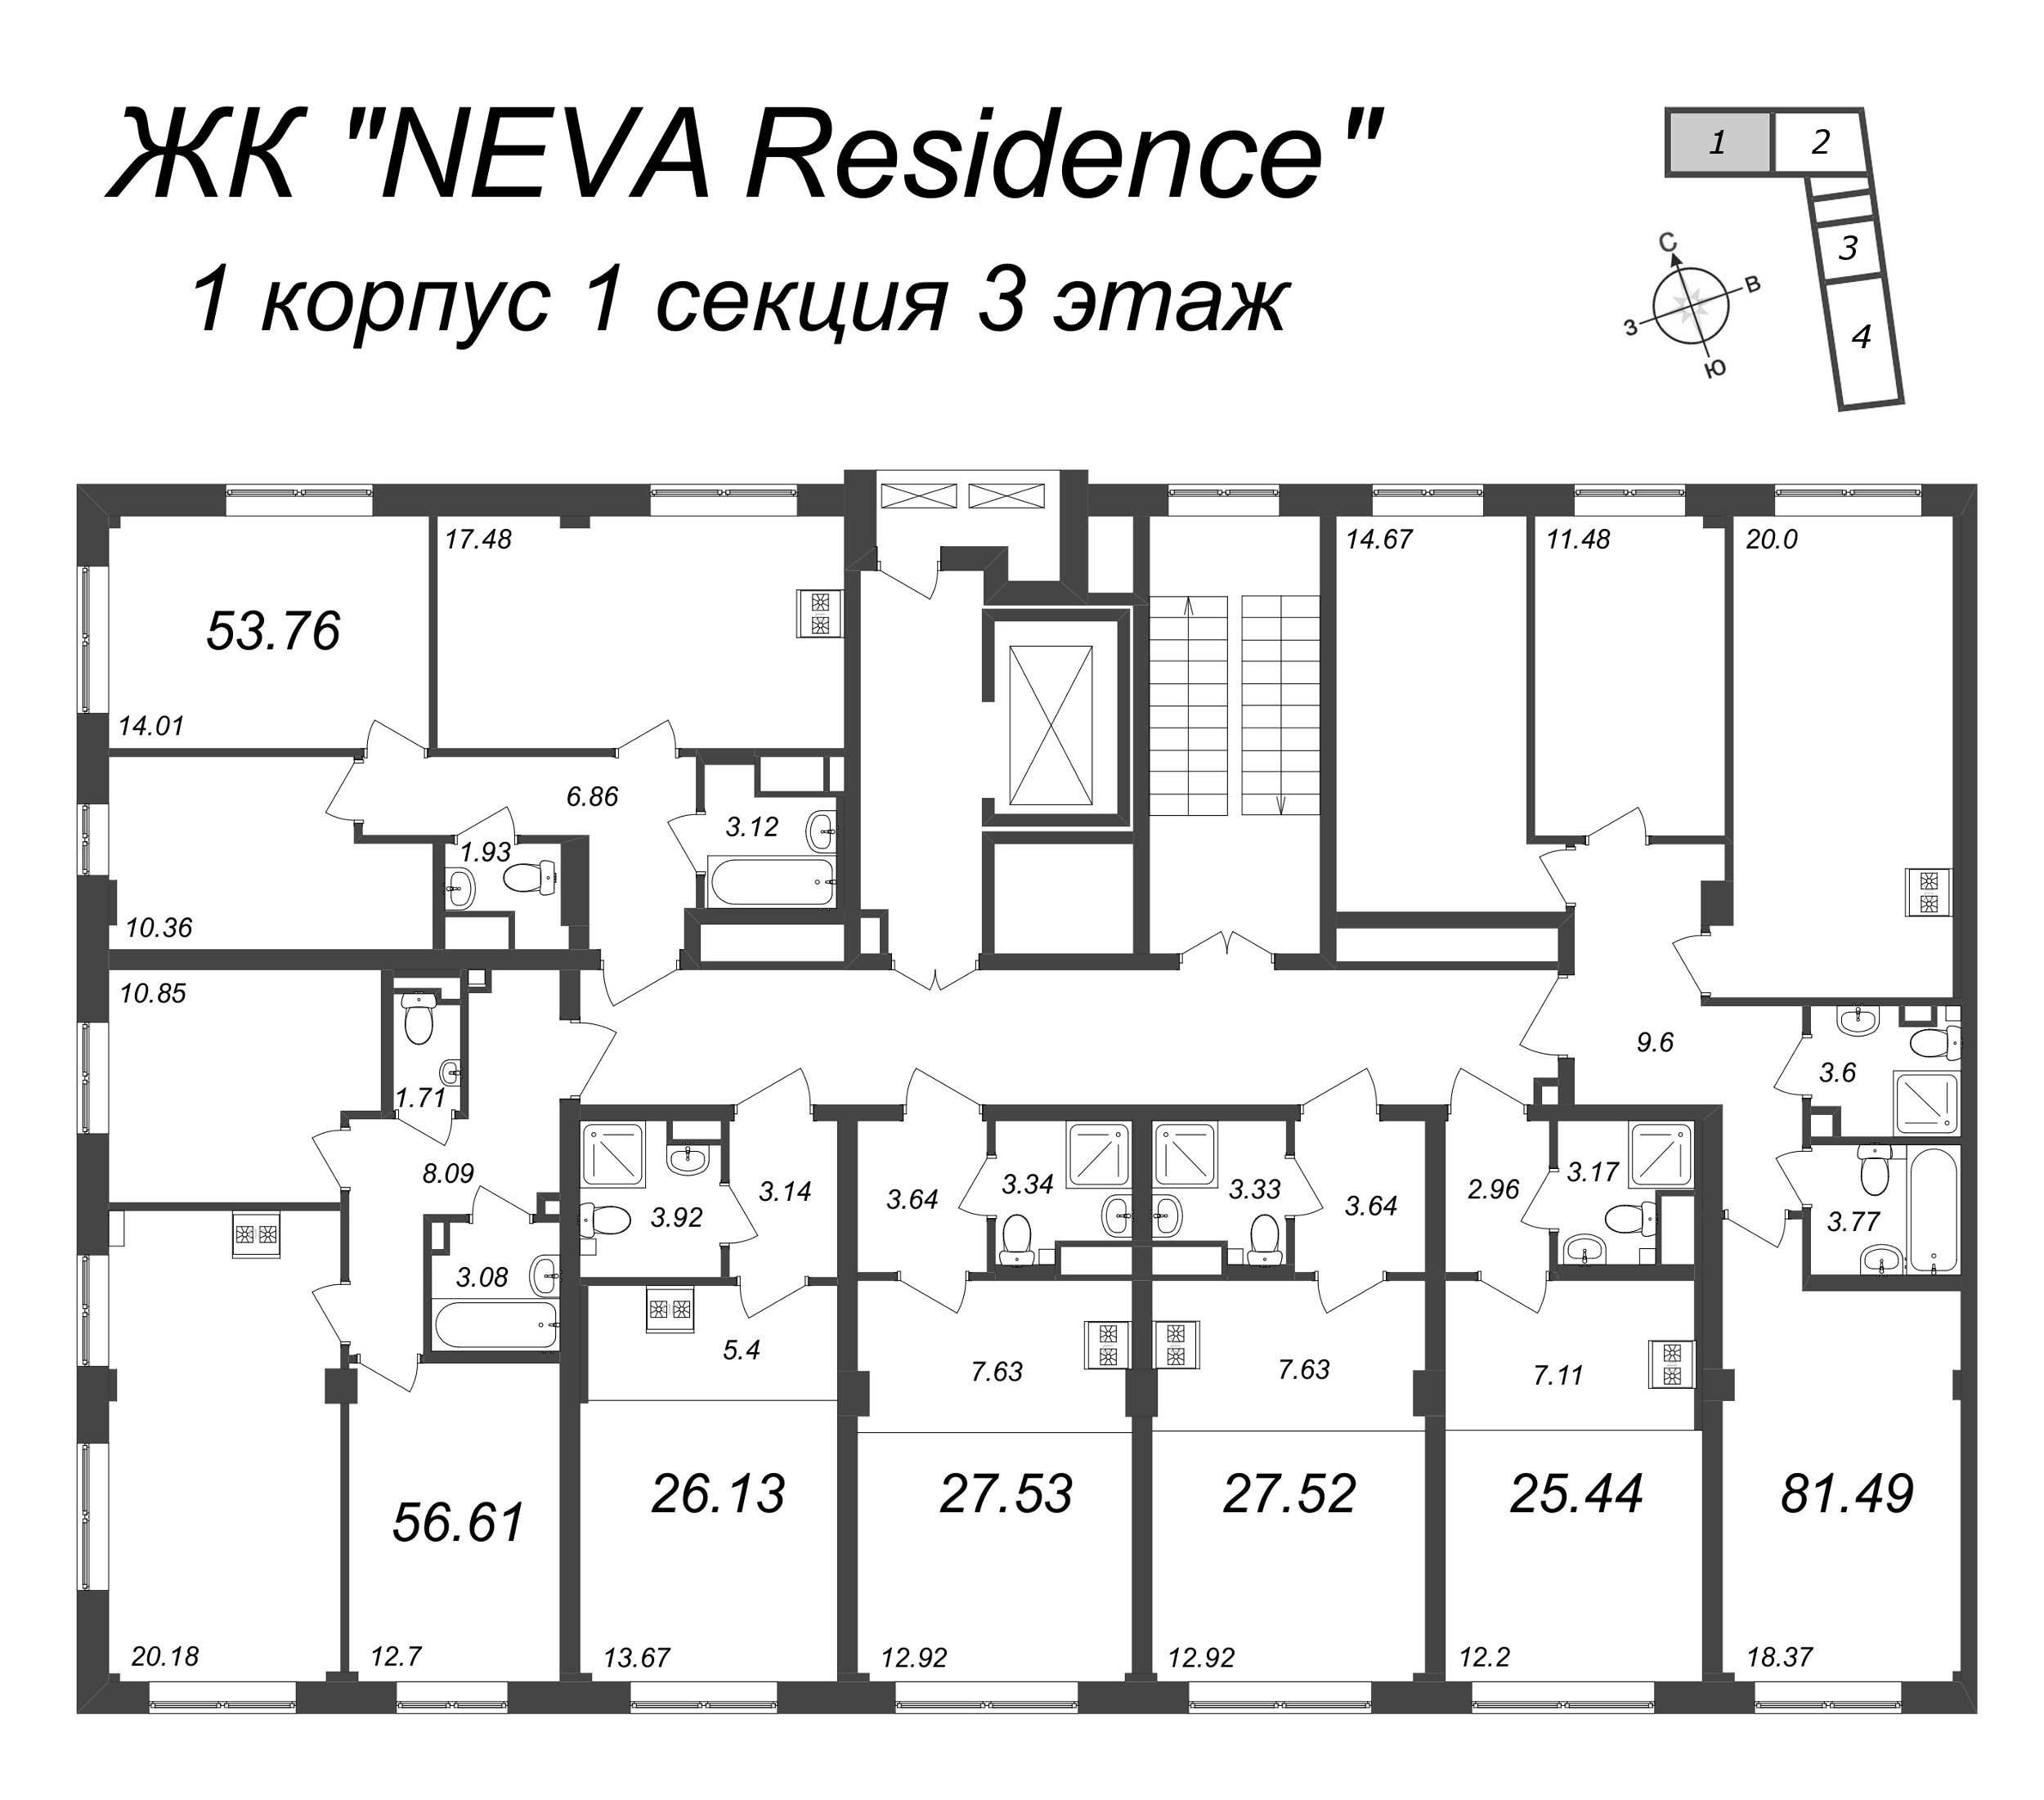 4-комнатная (Евро) квартира, 81.49 м² в ЖК "Neva Residence" - планировка этажа